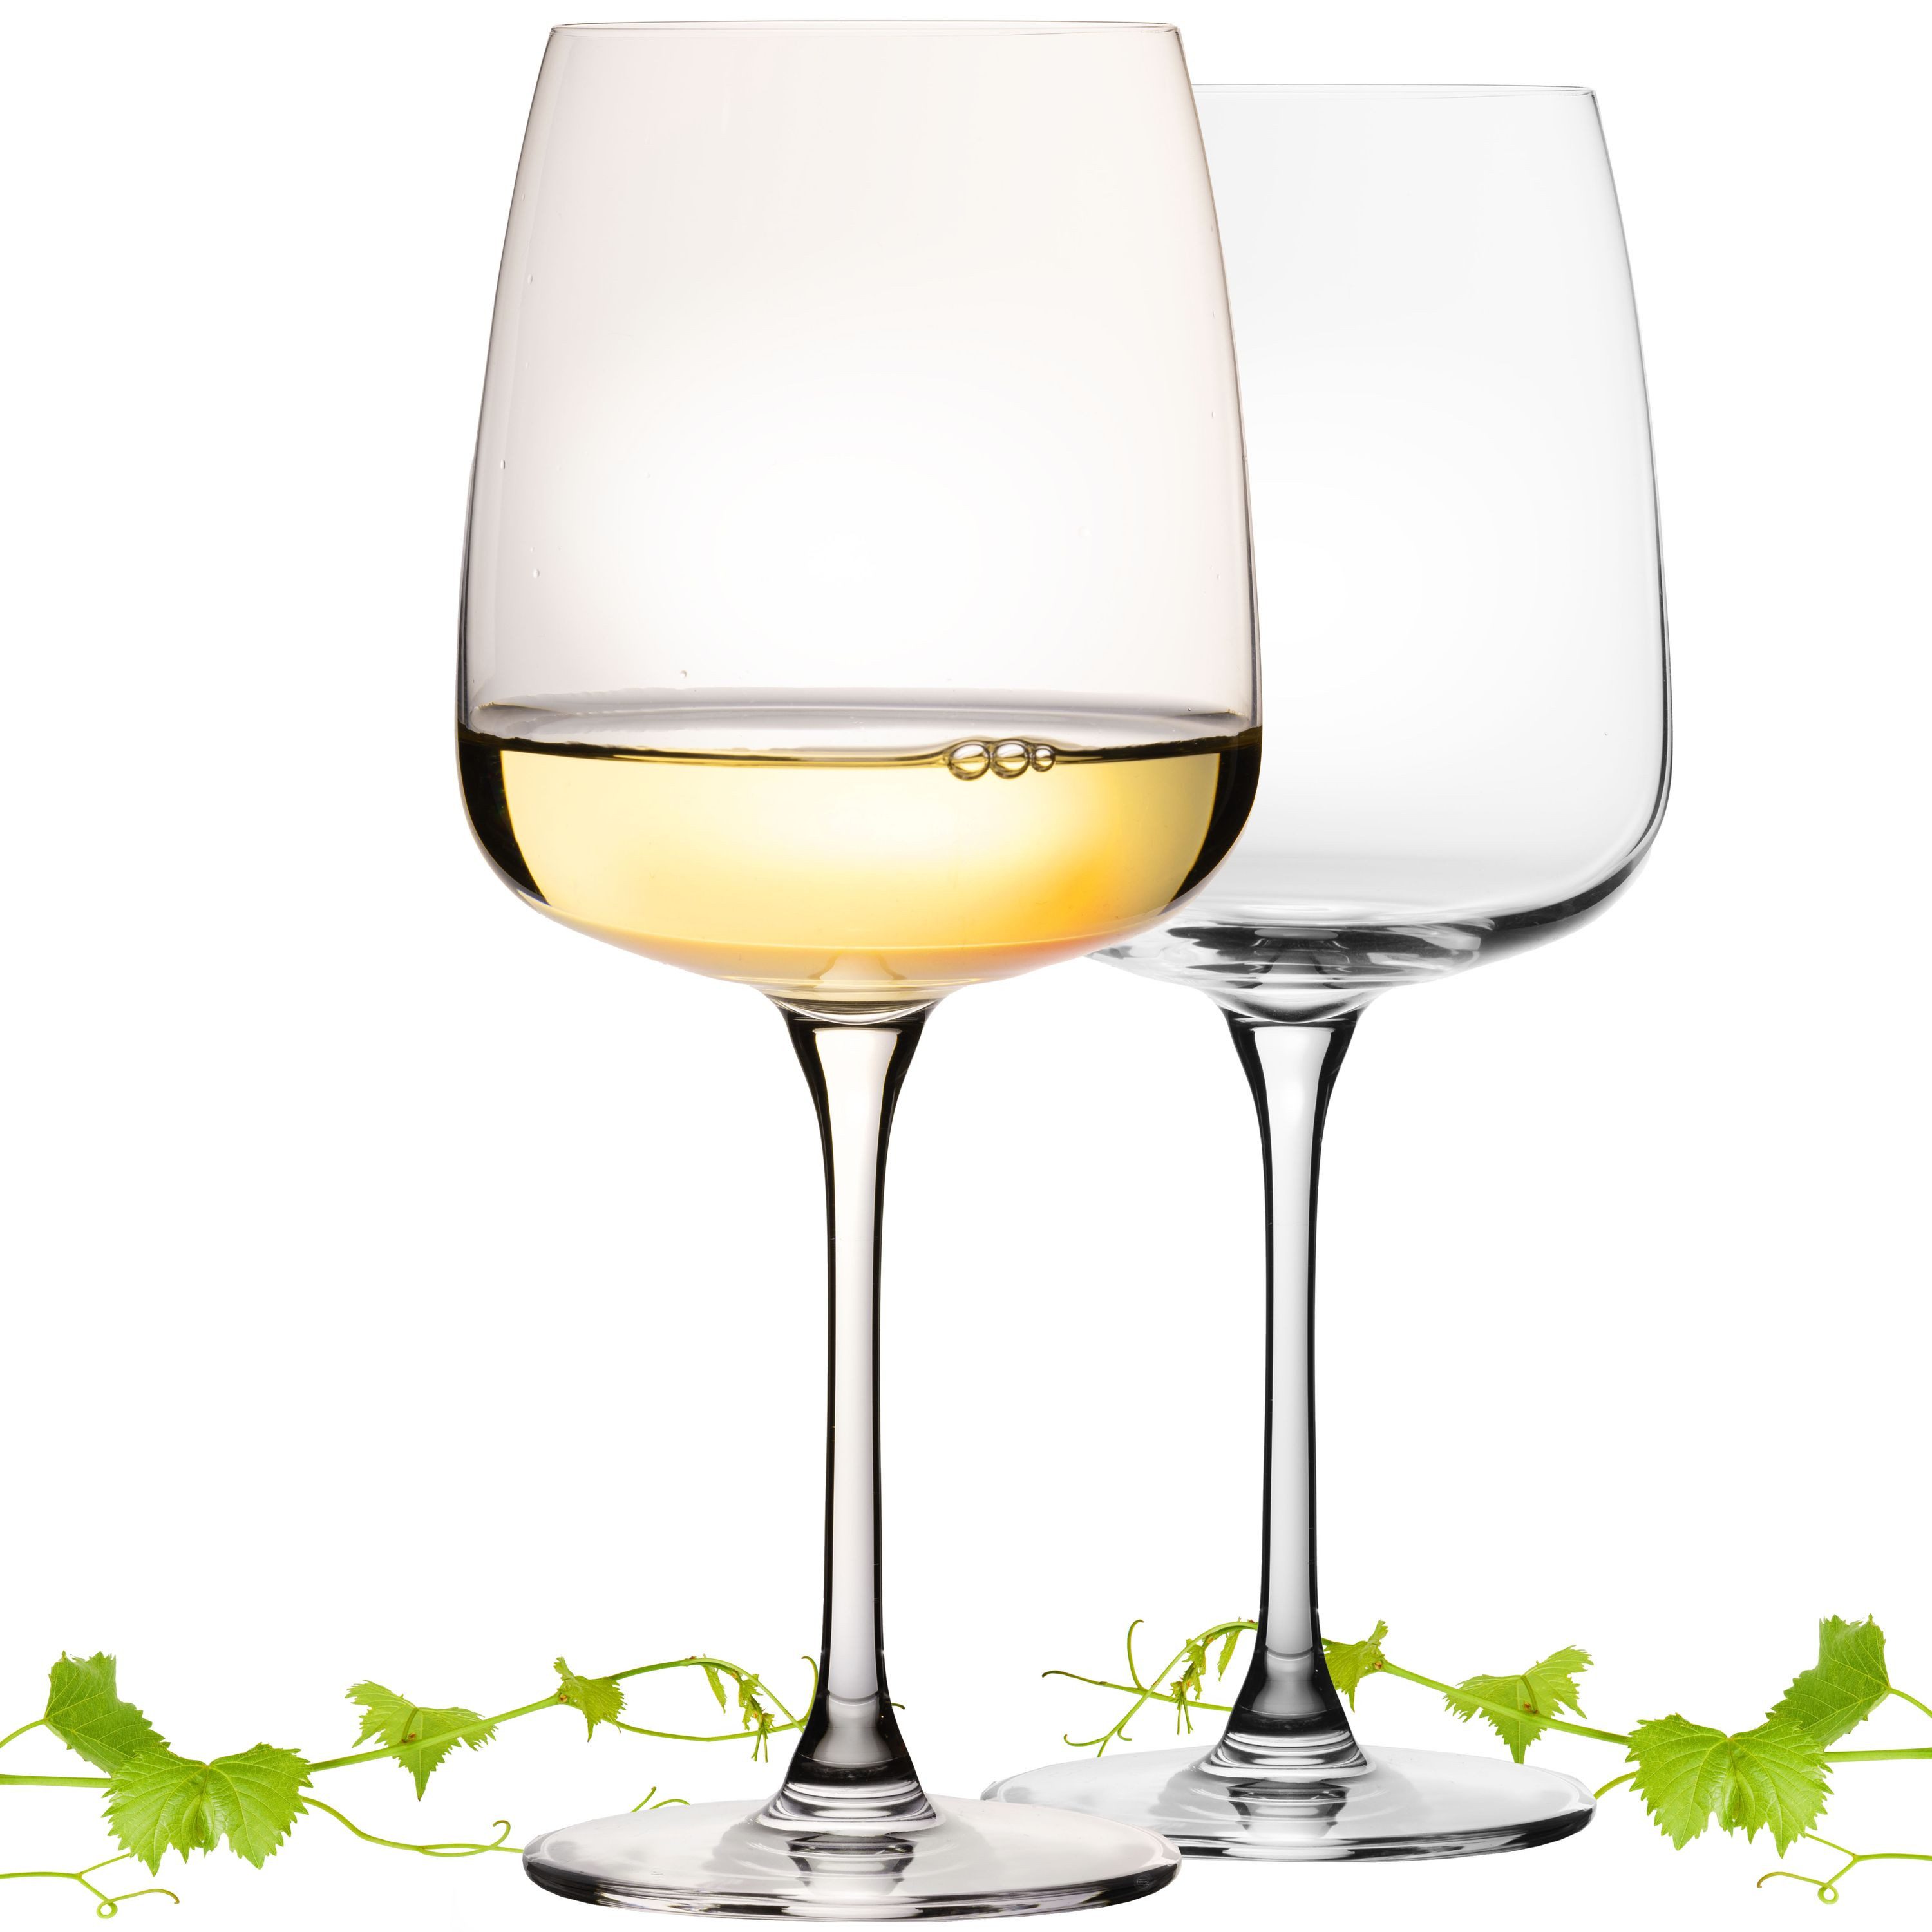 IMPERIAL glass Weinglas Große Eckige Weißweingläser 480ml "Milano" Set 2-Teilig, Crystalline Glas, Chardonnay Glas aus Crystalline Glas Spülmaschinenfest